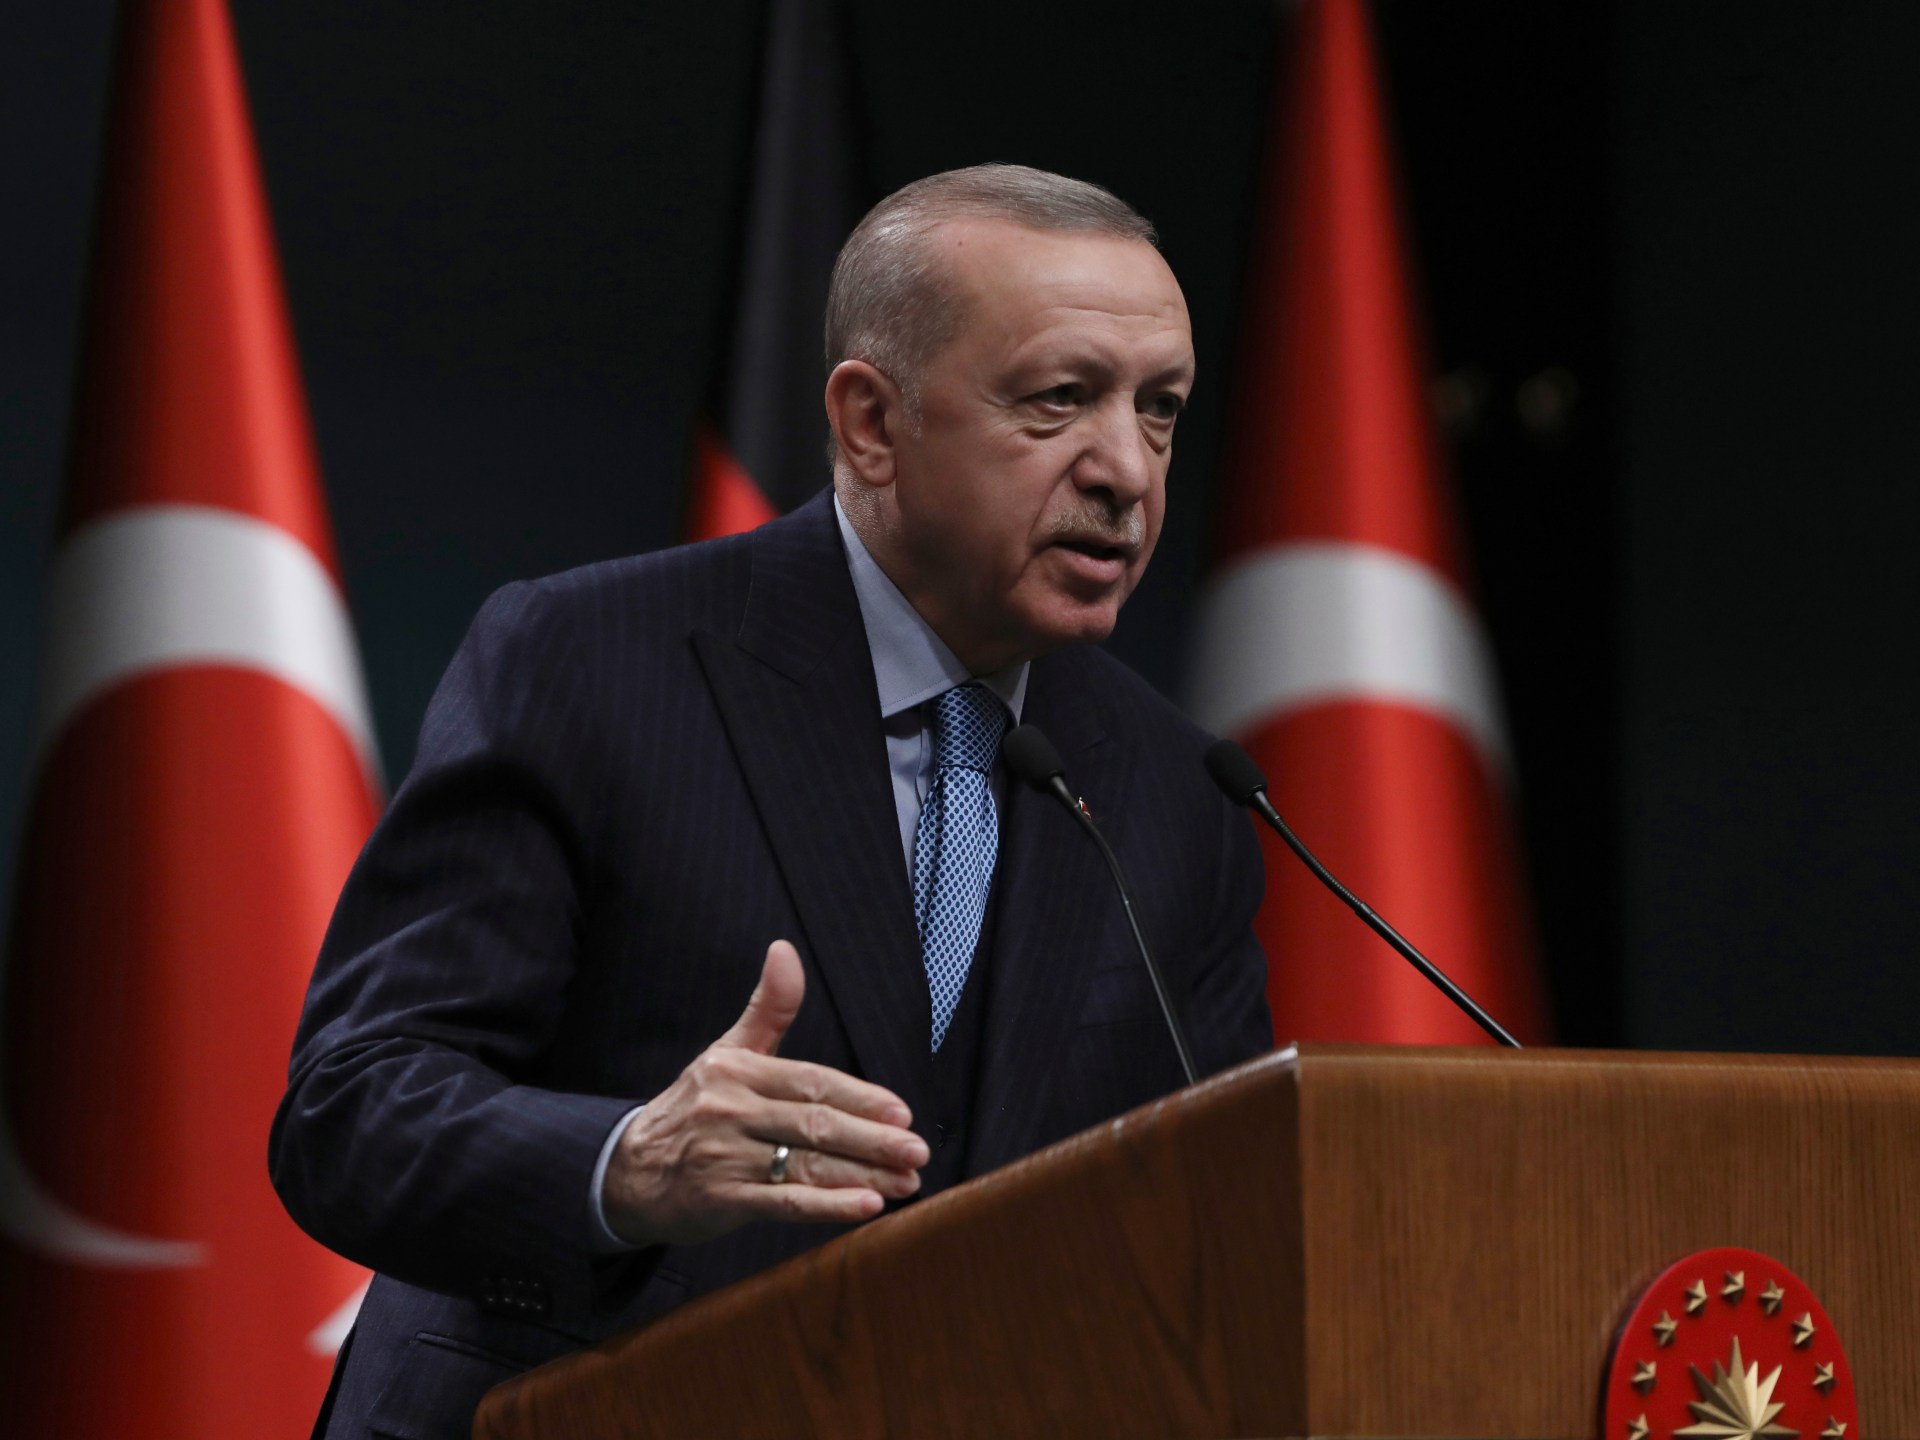 Erdogan warns Sweden on NATO bid after Quran burning protest